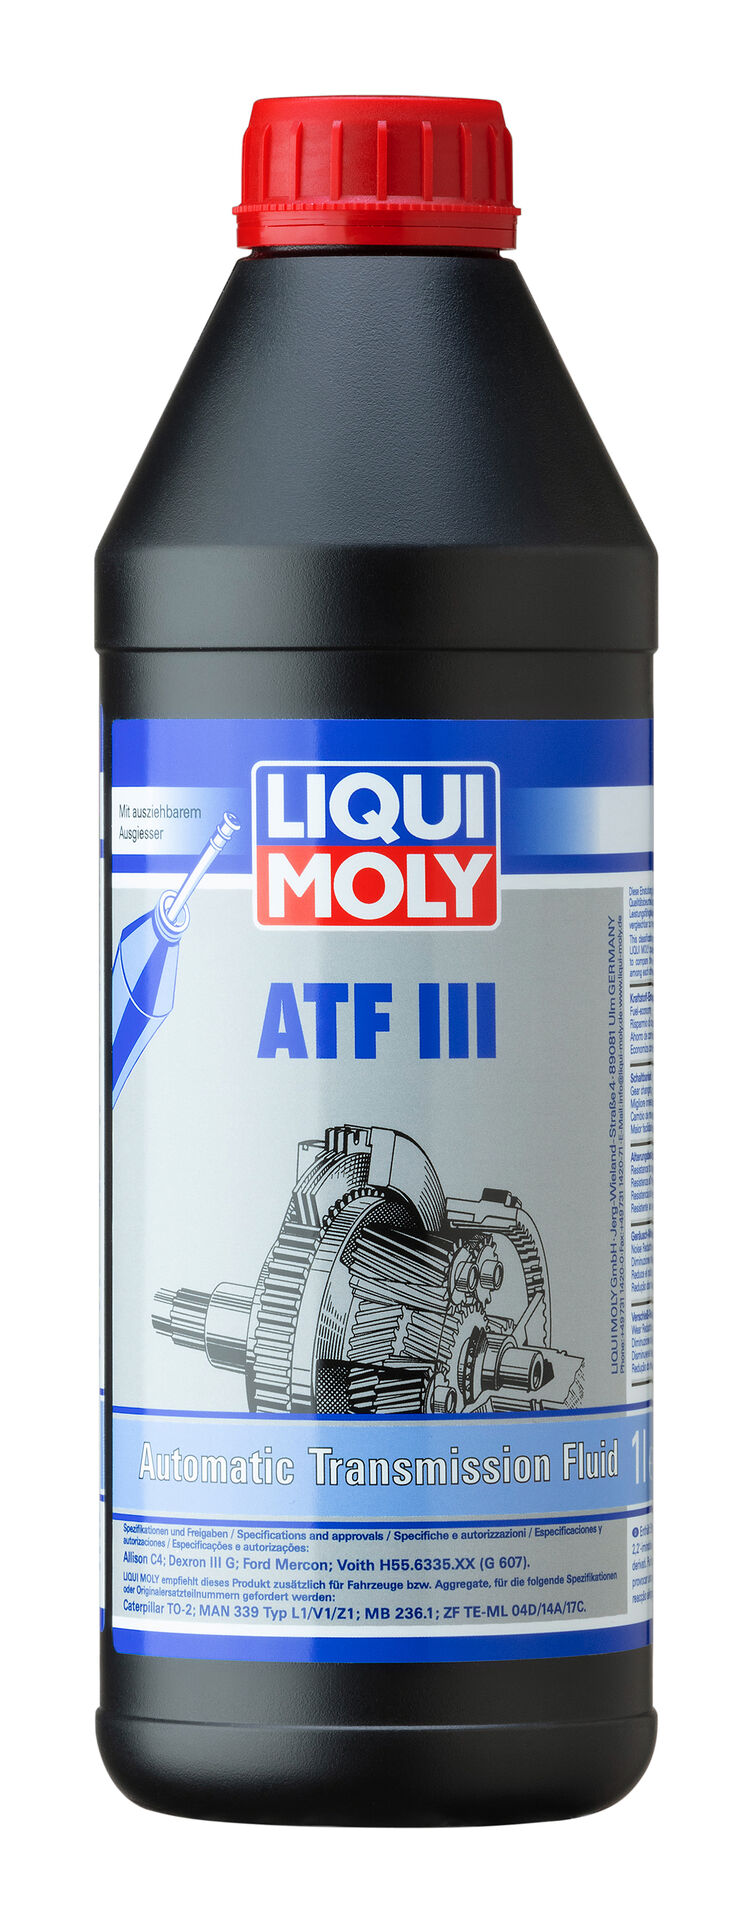  Liqui Moly 1043 1x1 Liter Dose ATF III Hydraulikflüssigkeit